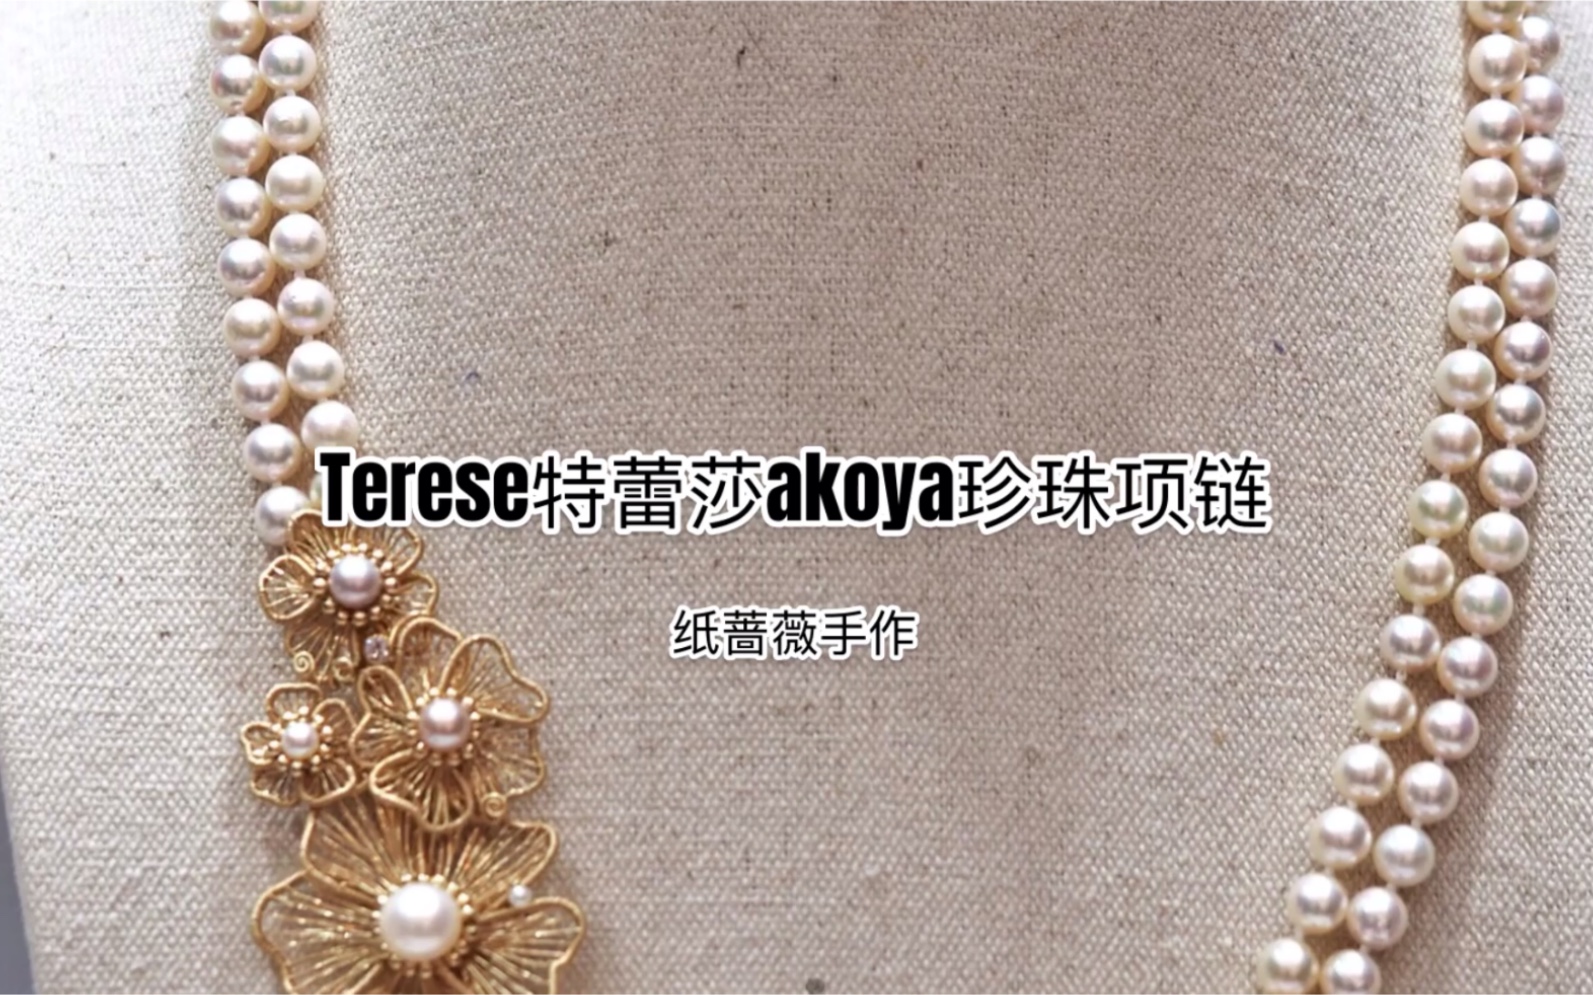 纸蔷薇手作Teresa特蕾莎akoya珍珠绕线项链绕线首饰